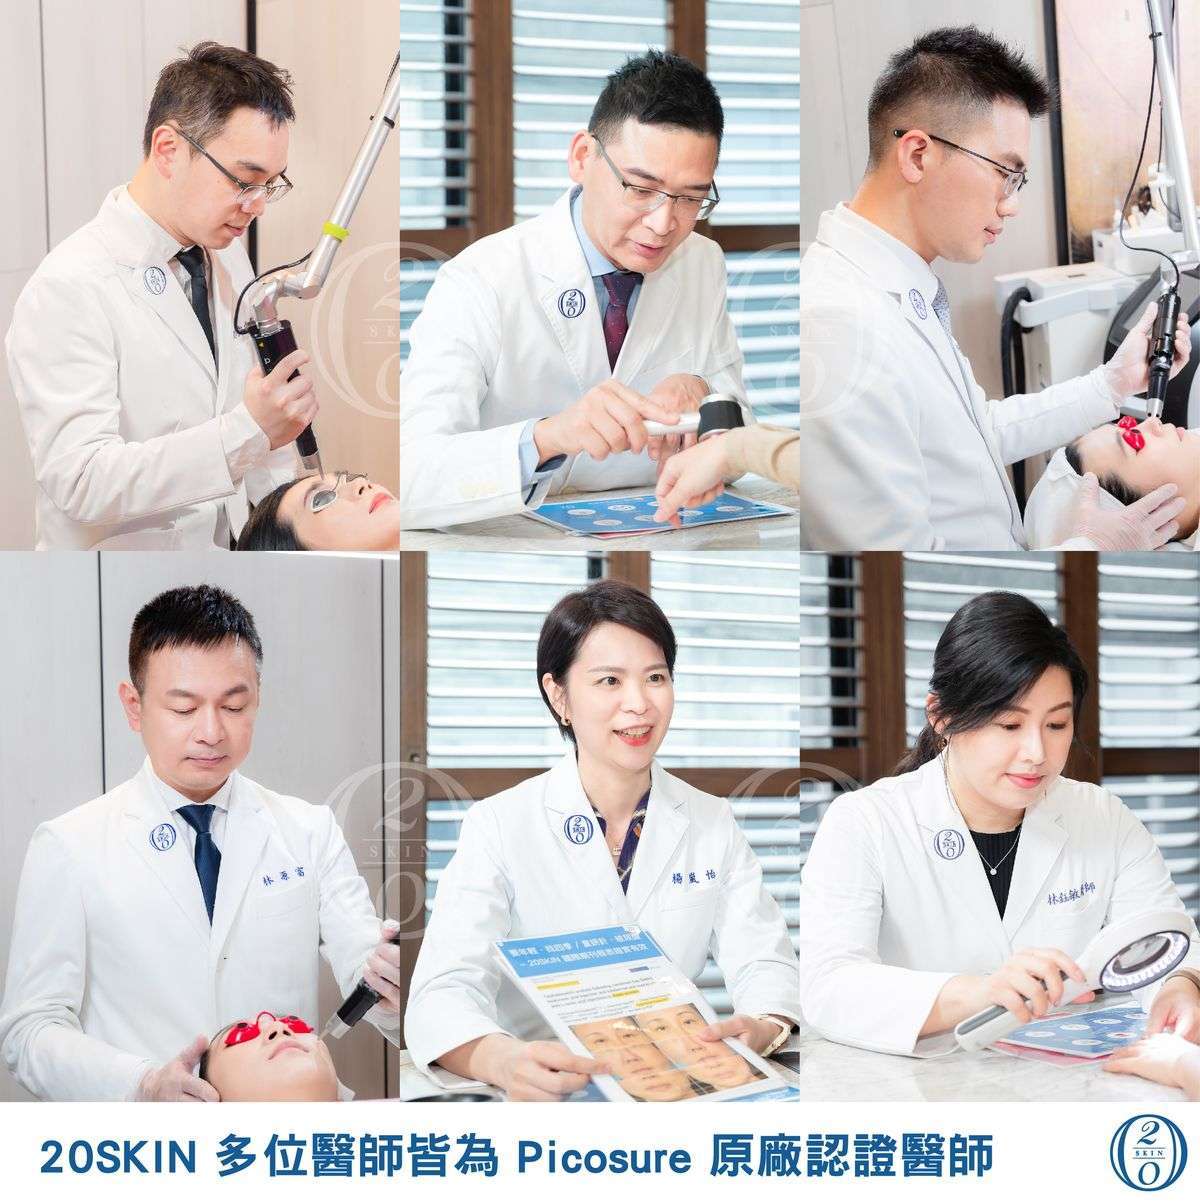 四季皮膚科診所的醫師團隊們全員獲得Picosure認證醫師證照